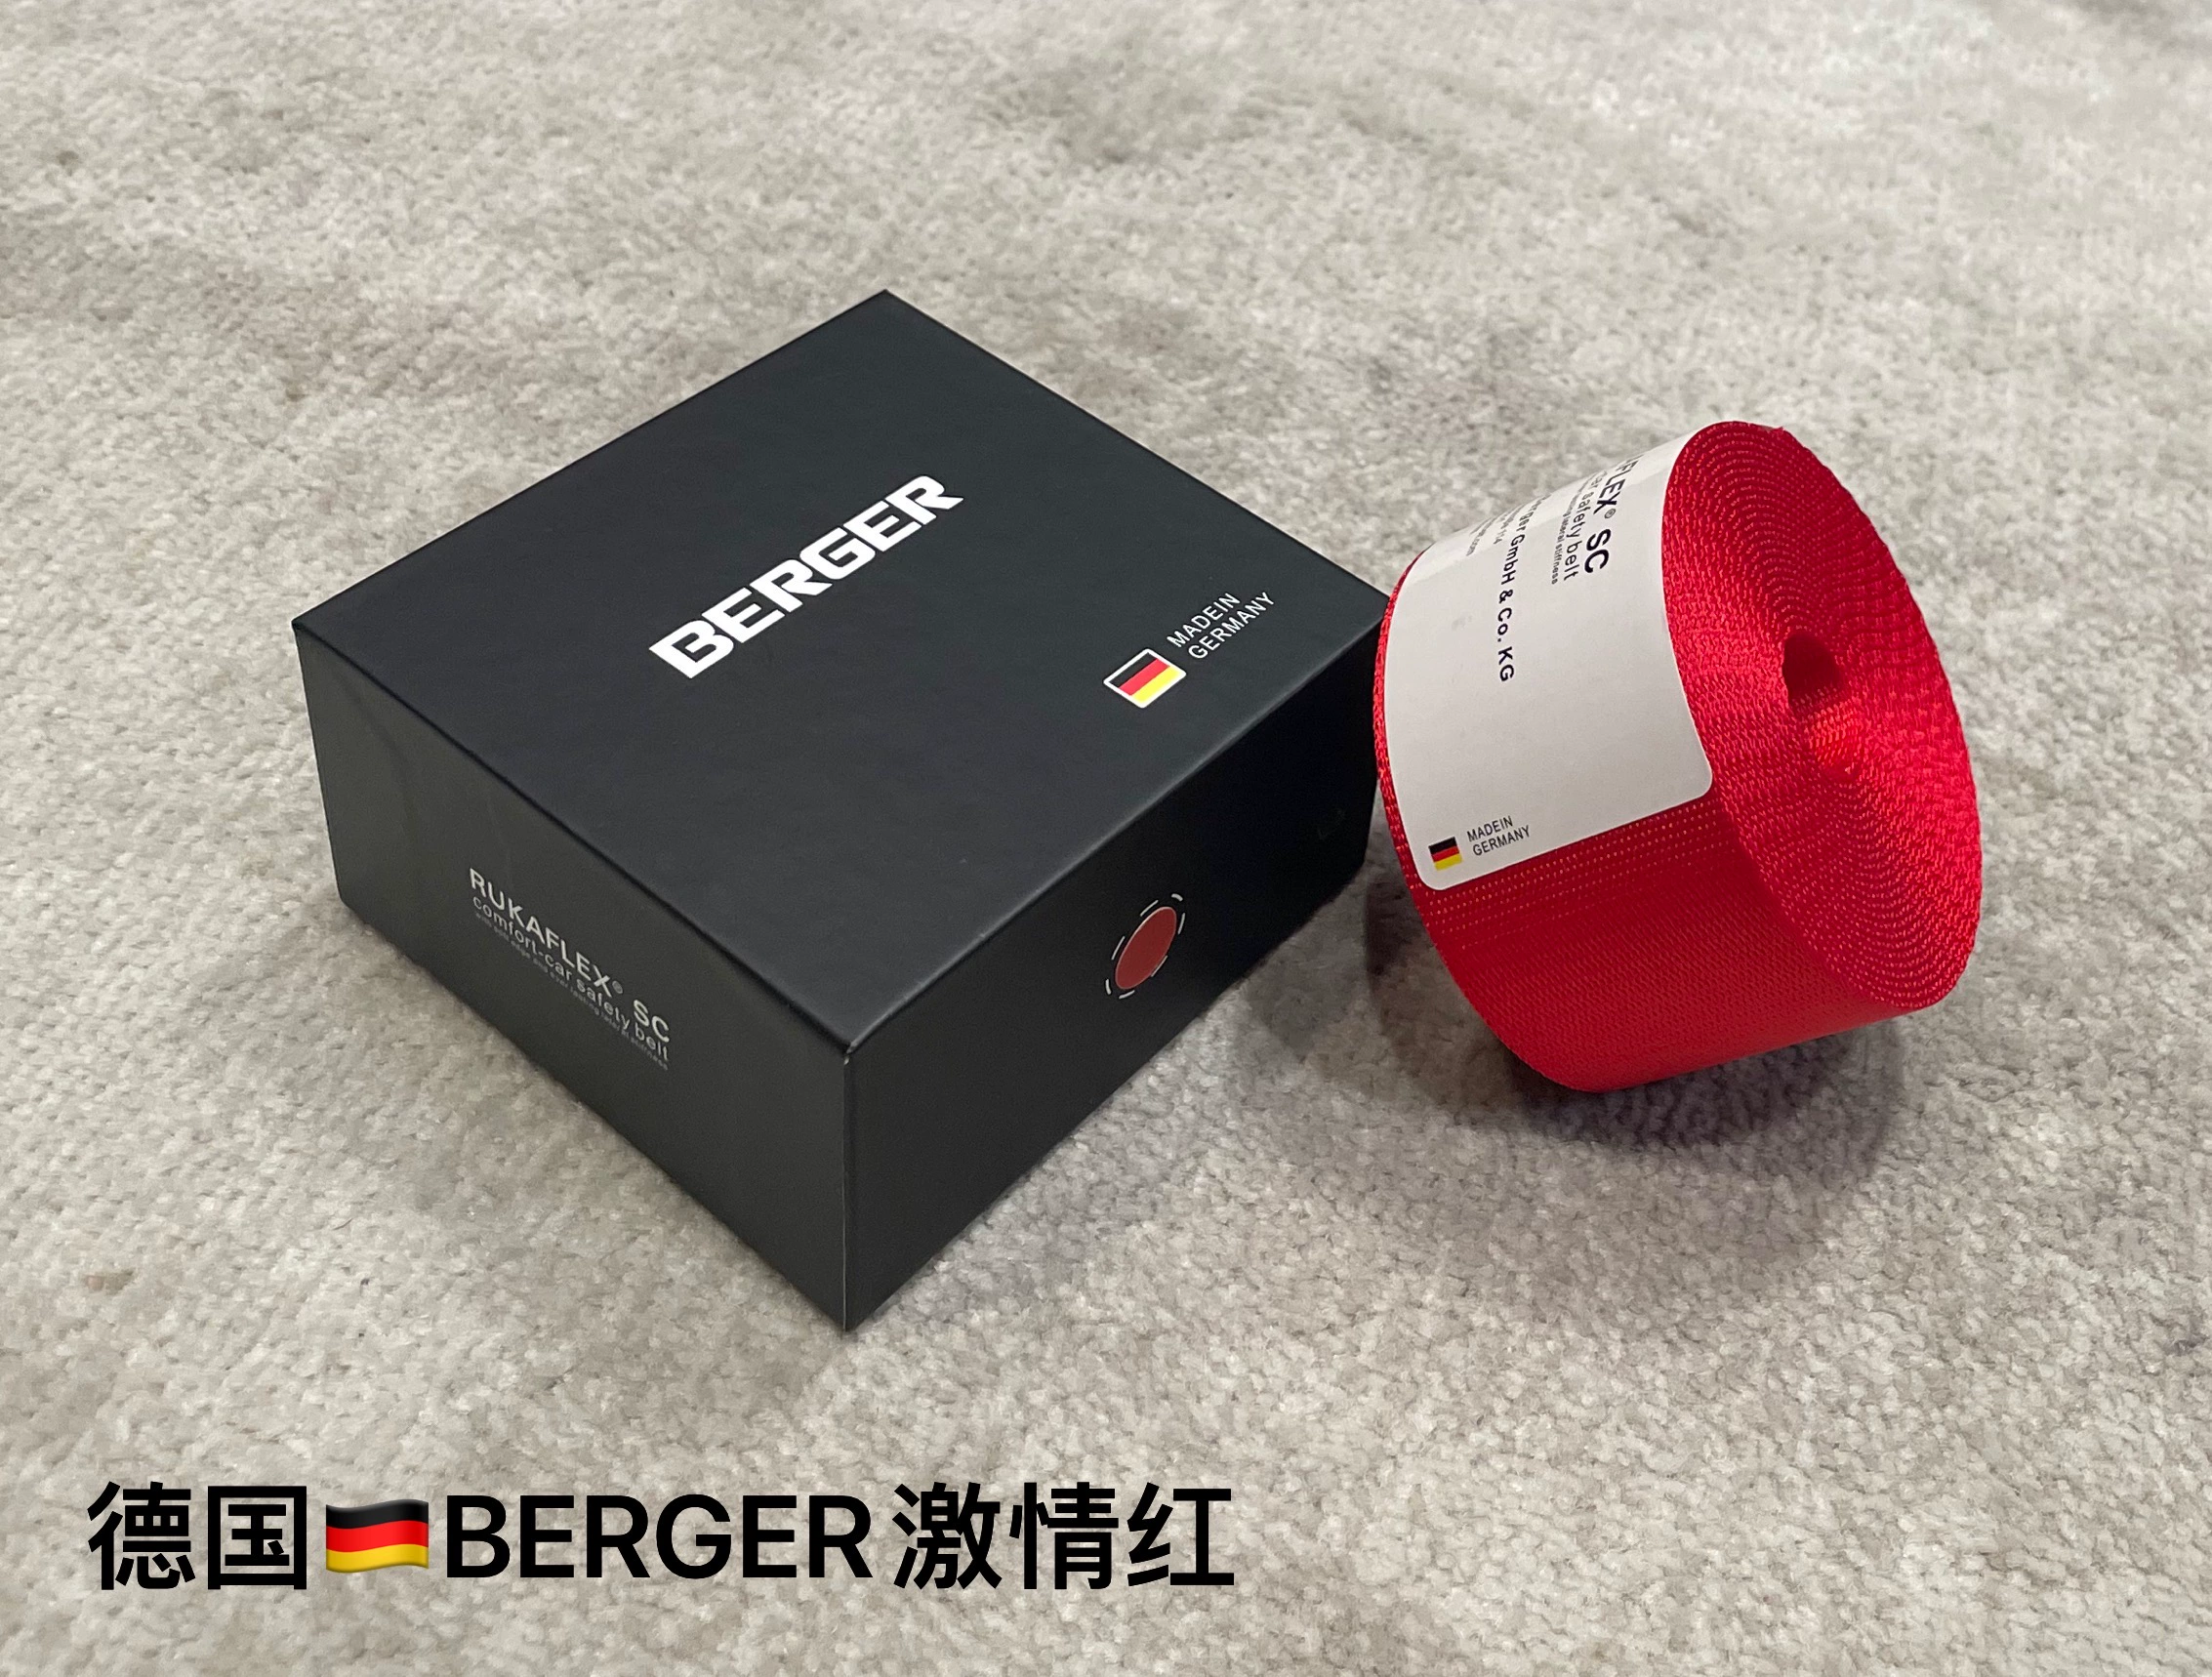 Đai an toàn màu đỏ niềm đam mê BERGER của Đức sửa đổi xe và tân trang lại đai an toàn thay đổi màu sắc Đai an toàn Goode bộ dây đai an toàn đai ghế ngồi ô to cho be 